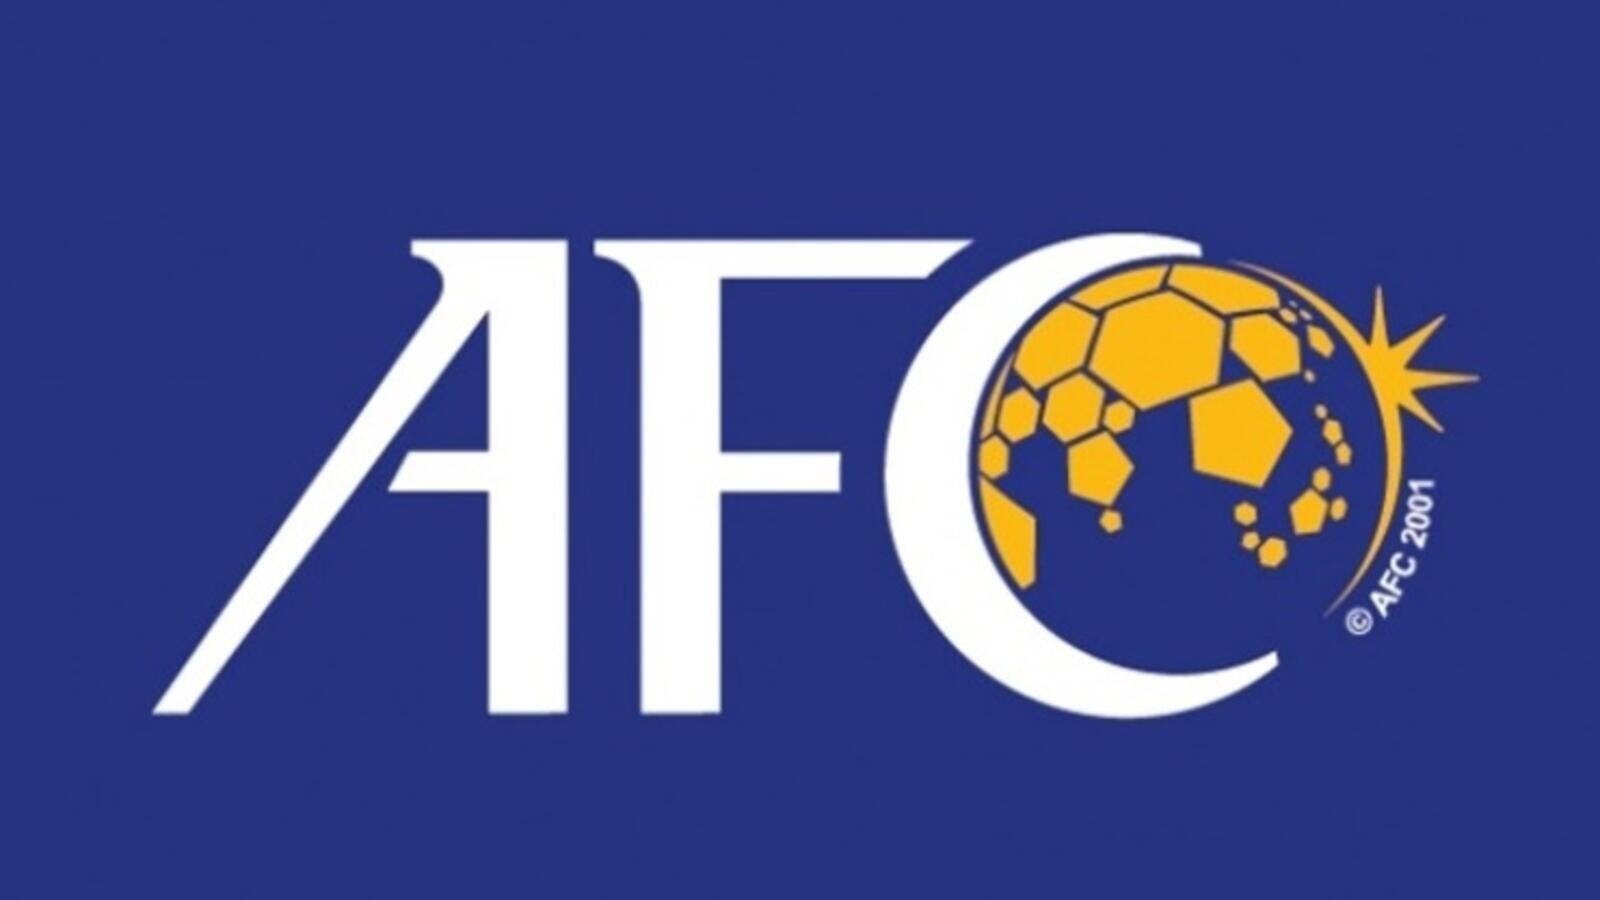 AFC Elite Scheme